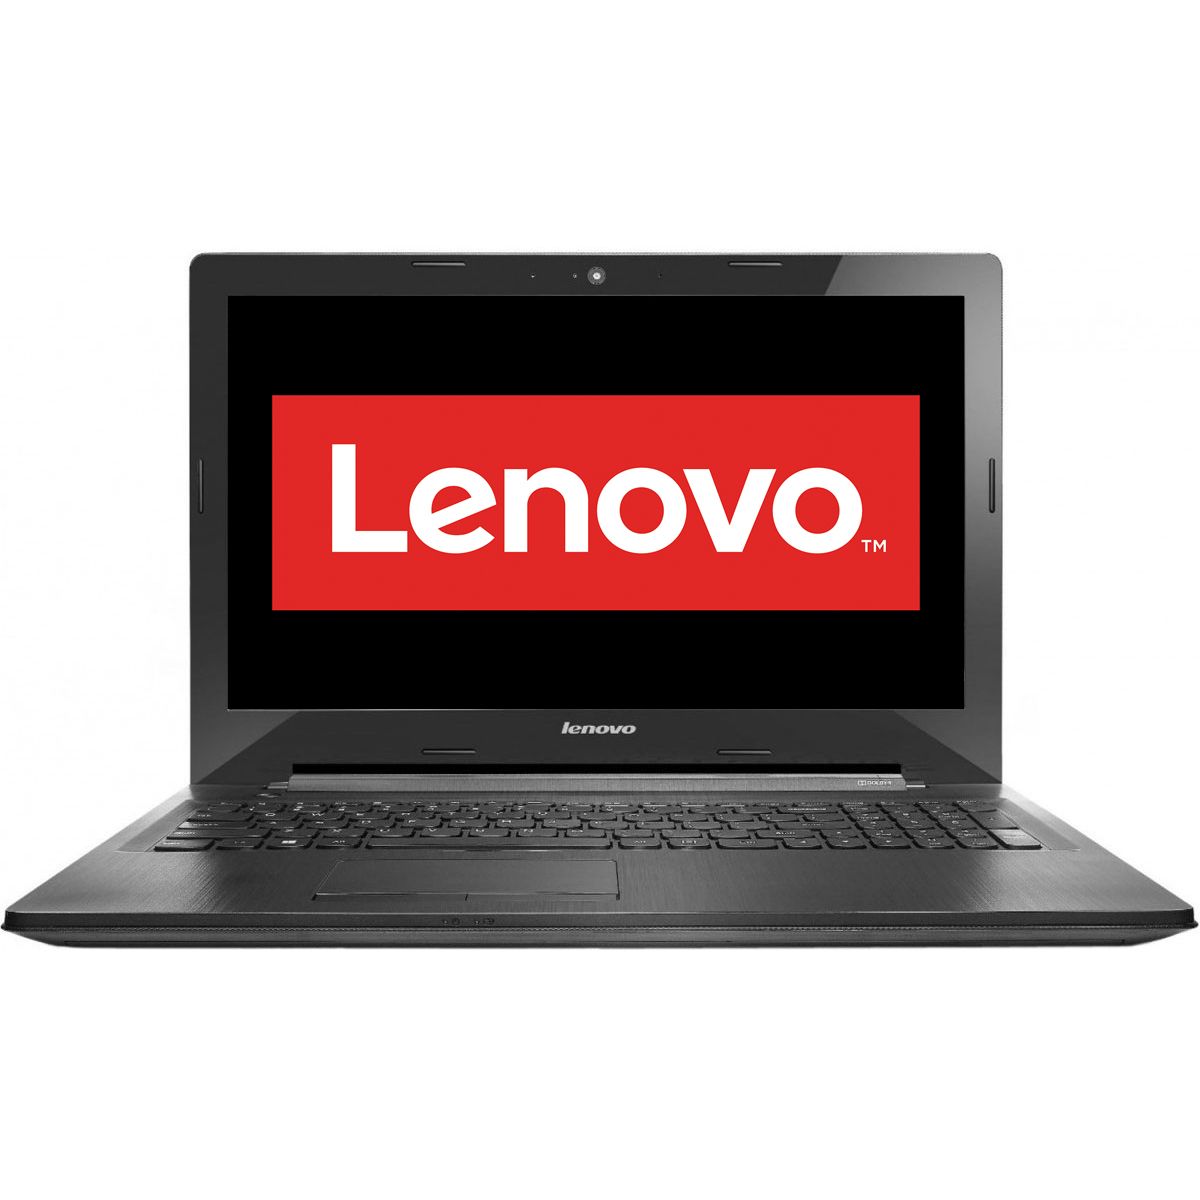  Laptop Lenovo IdeaPad G50-45, AMD A8-6410, 4GB DDR3, HDD 1TB, AMD Radeon R5 M330 2GB, Free DOS 